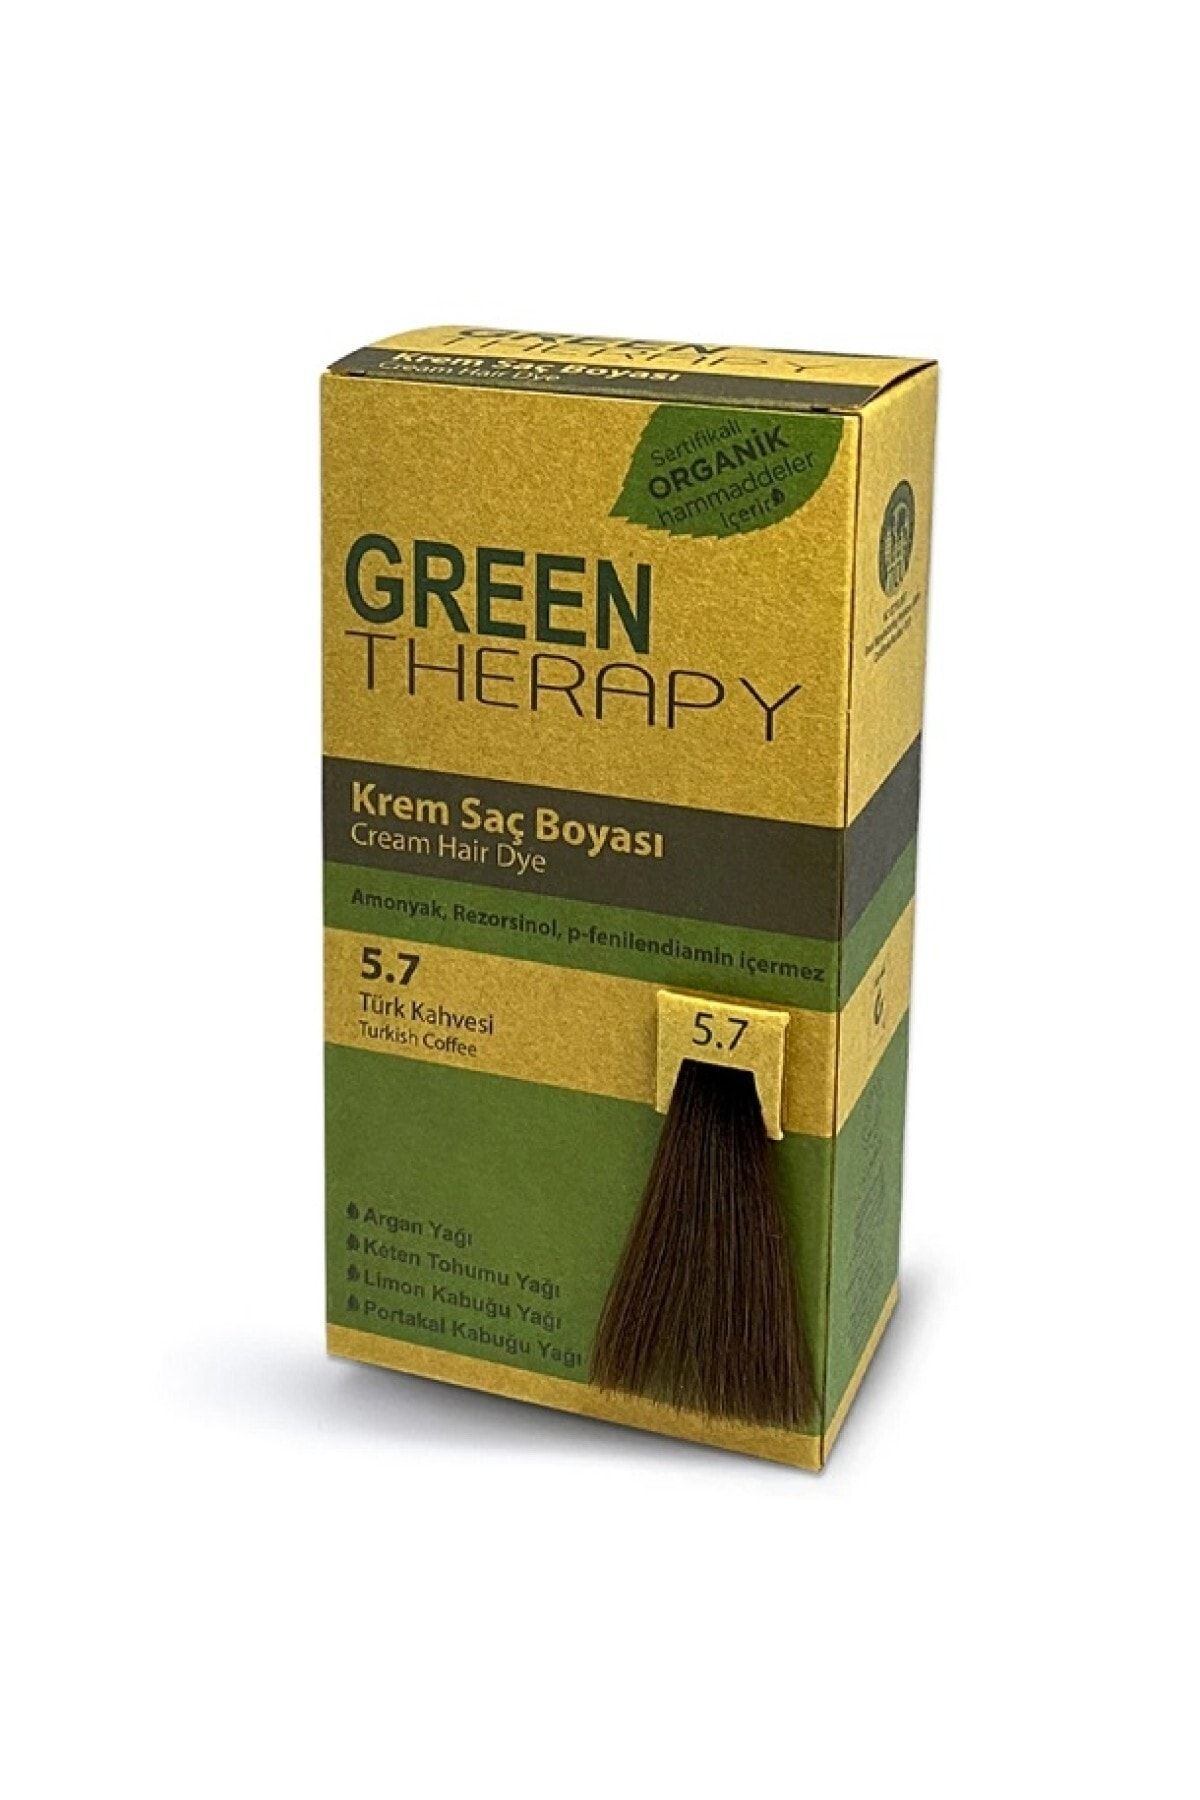 Green Therapy Krem Saç Boyası 5.7 Türk Kahvesi